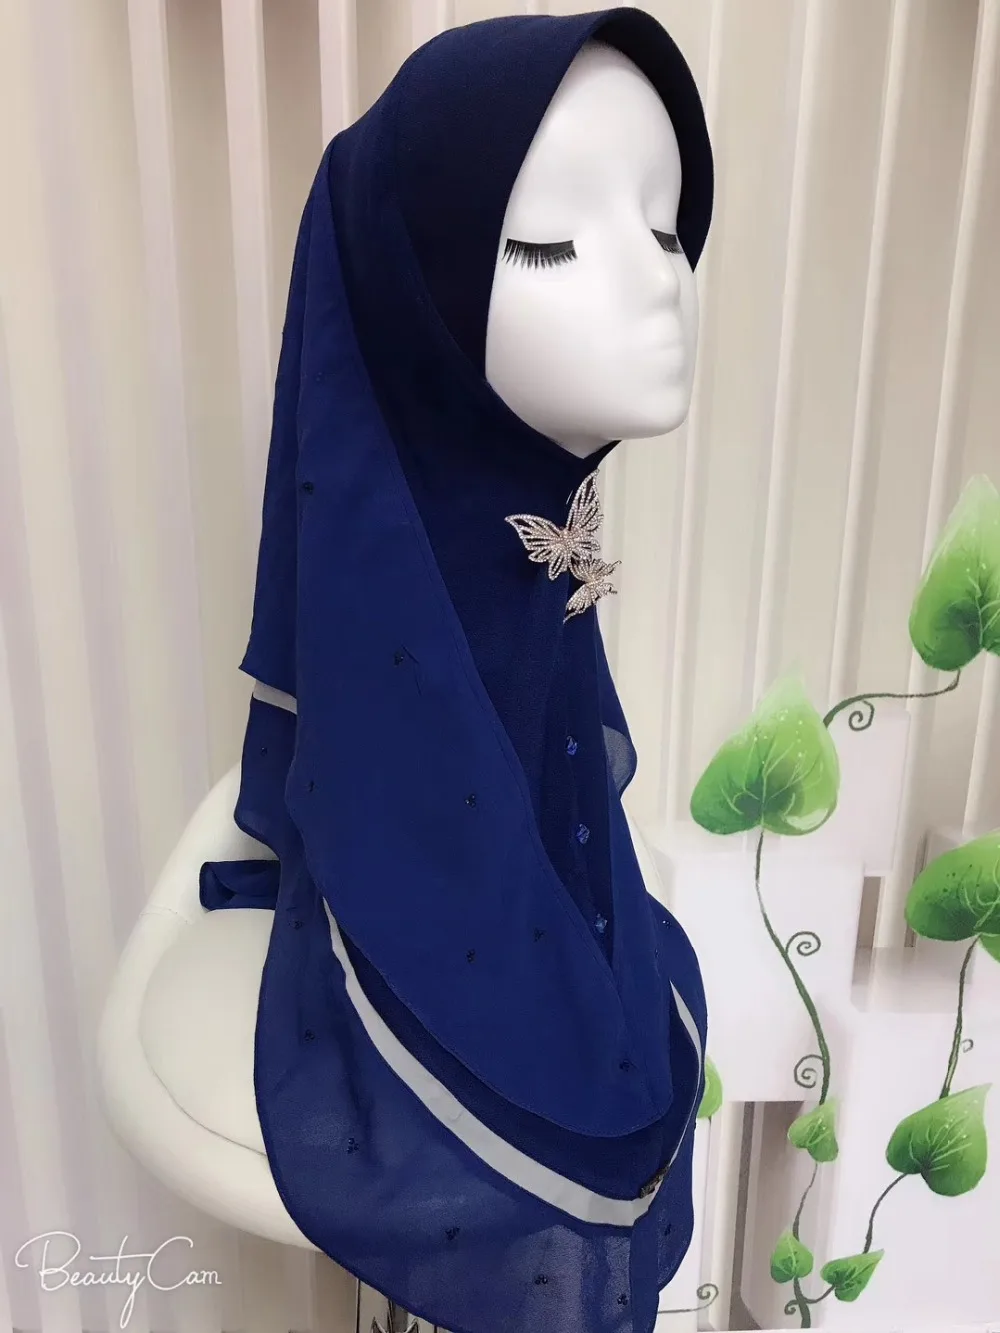 Мусульманские мгновенные обертывания Малайзия L 75D толстый Жемчуг шифон горячей фиксации горный хрусталь дизайн удобный один кусок хиджаб длинные 78 см для женщин